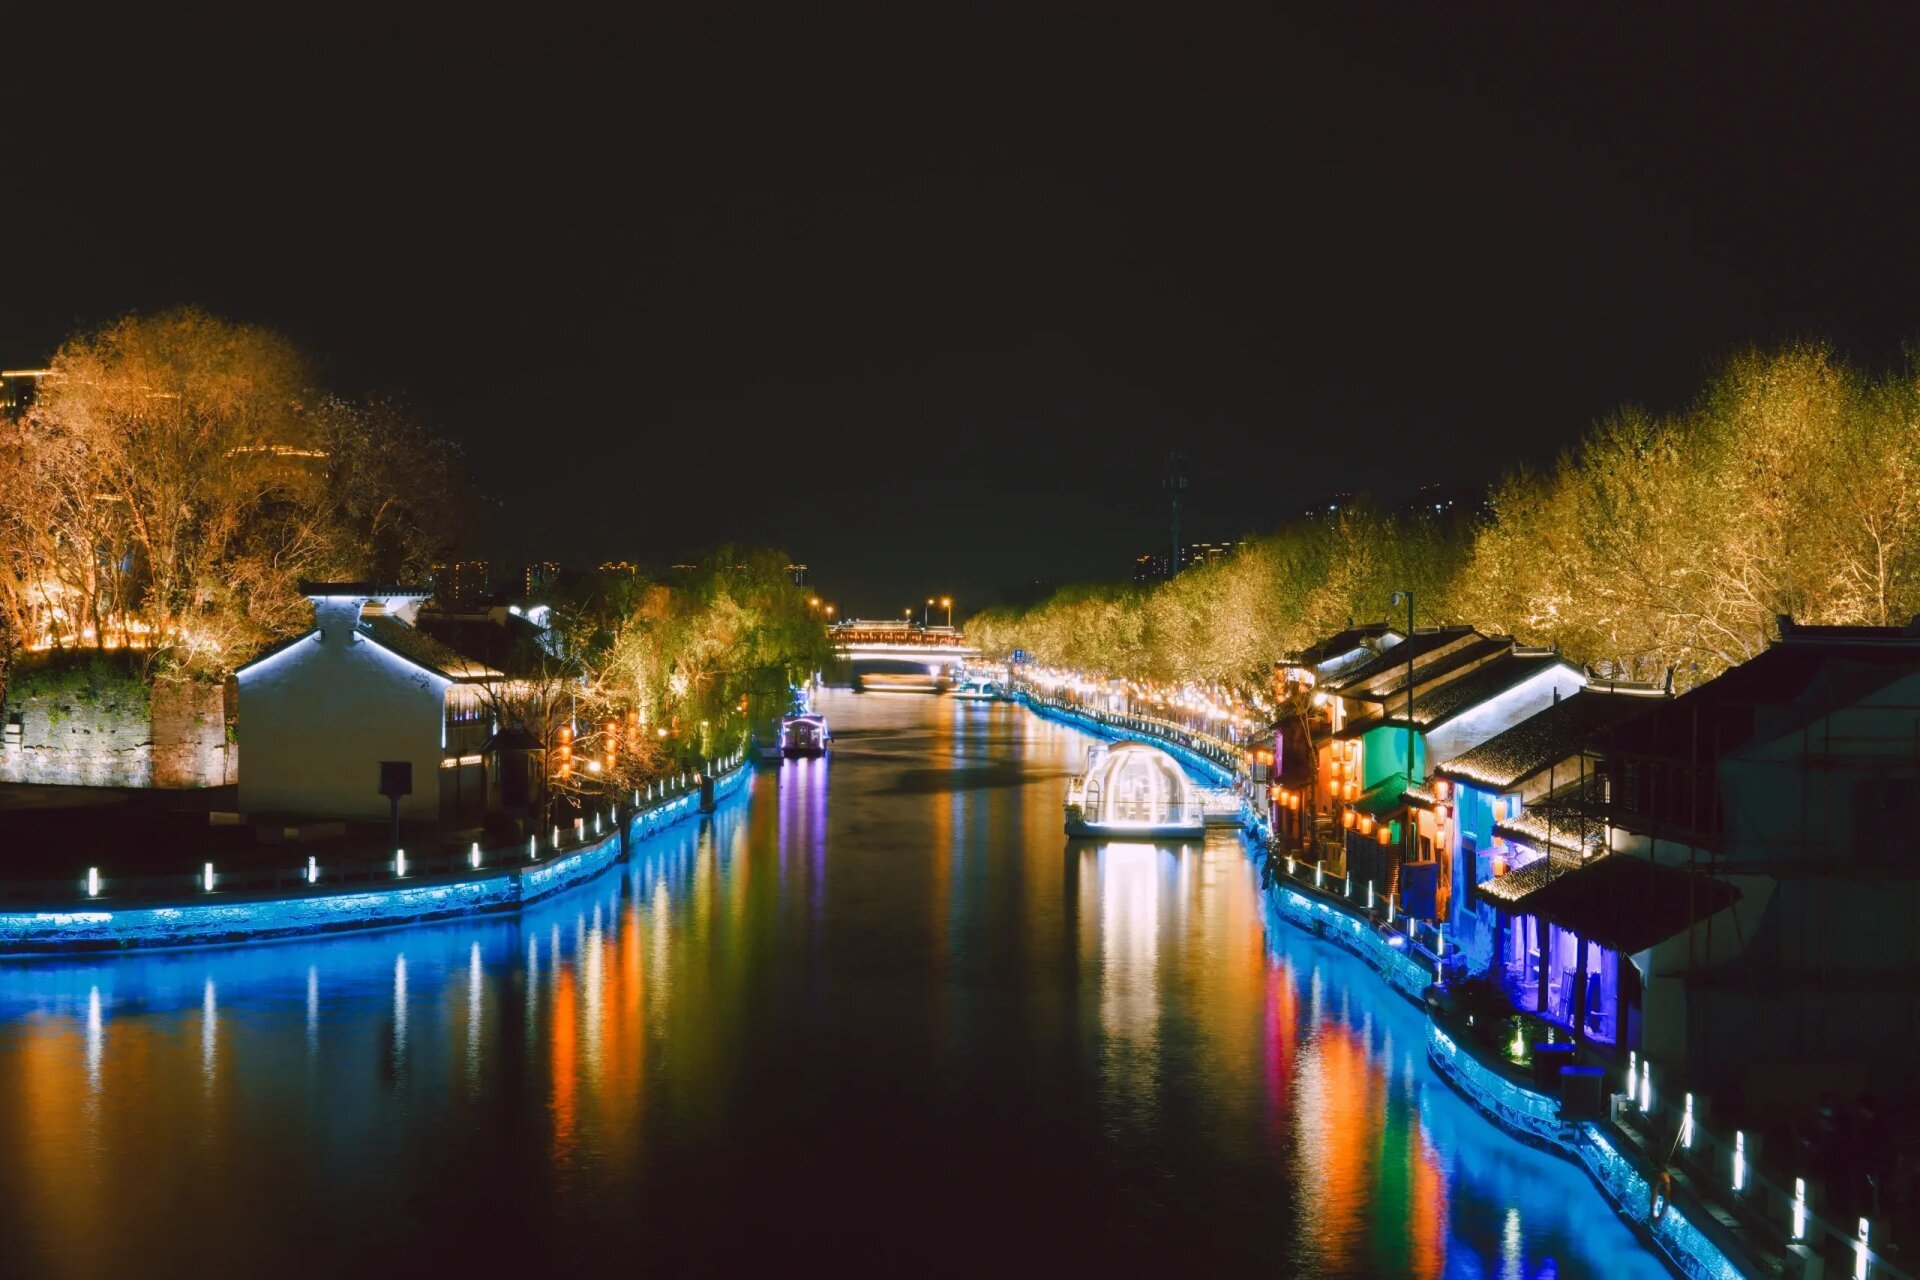 无锡古运河夜景图片